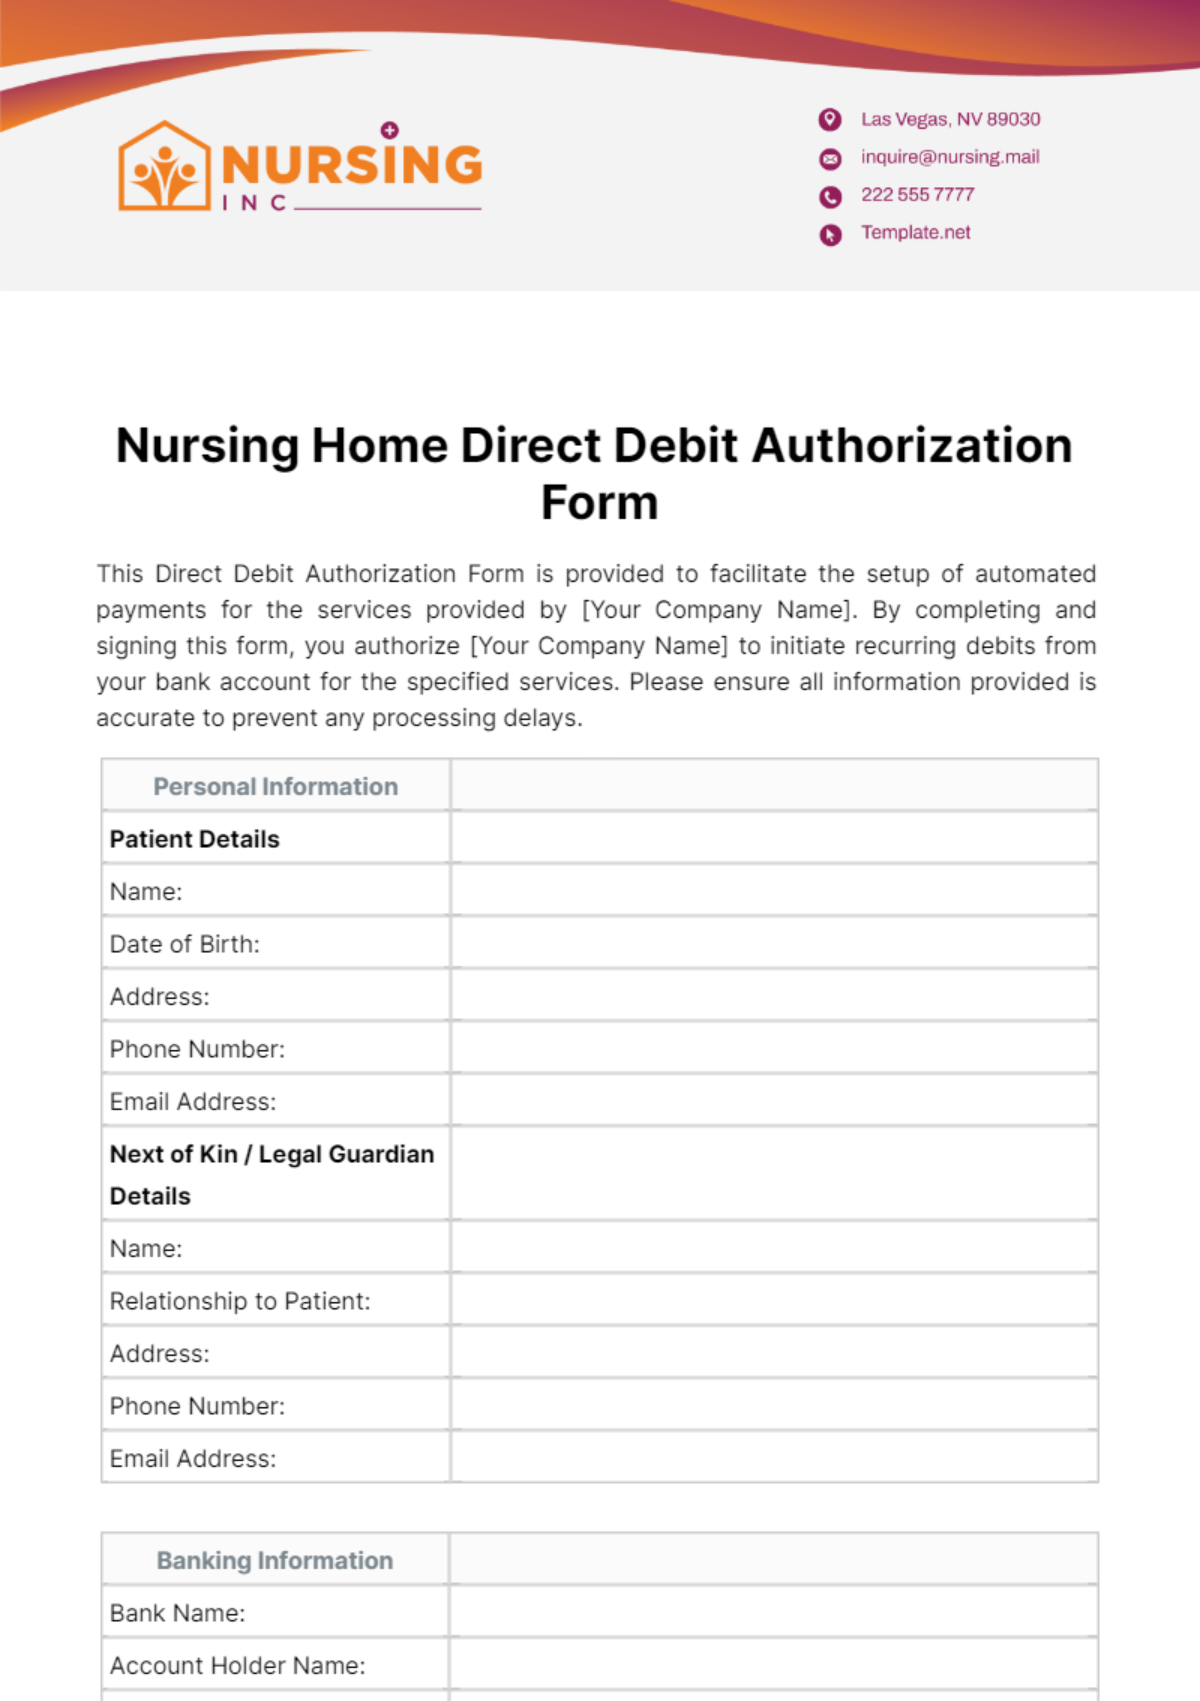 Nursing Home Direct Debit Authorization Form Template